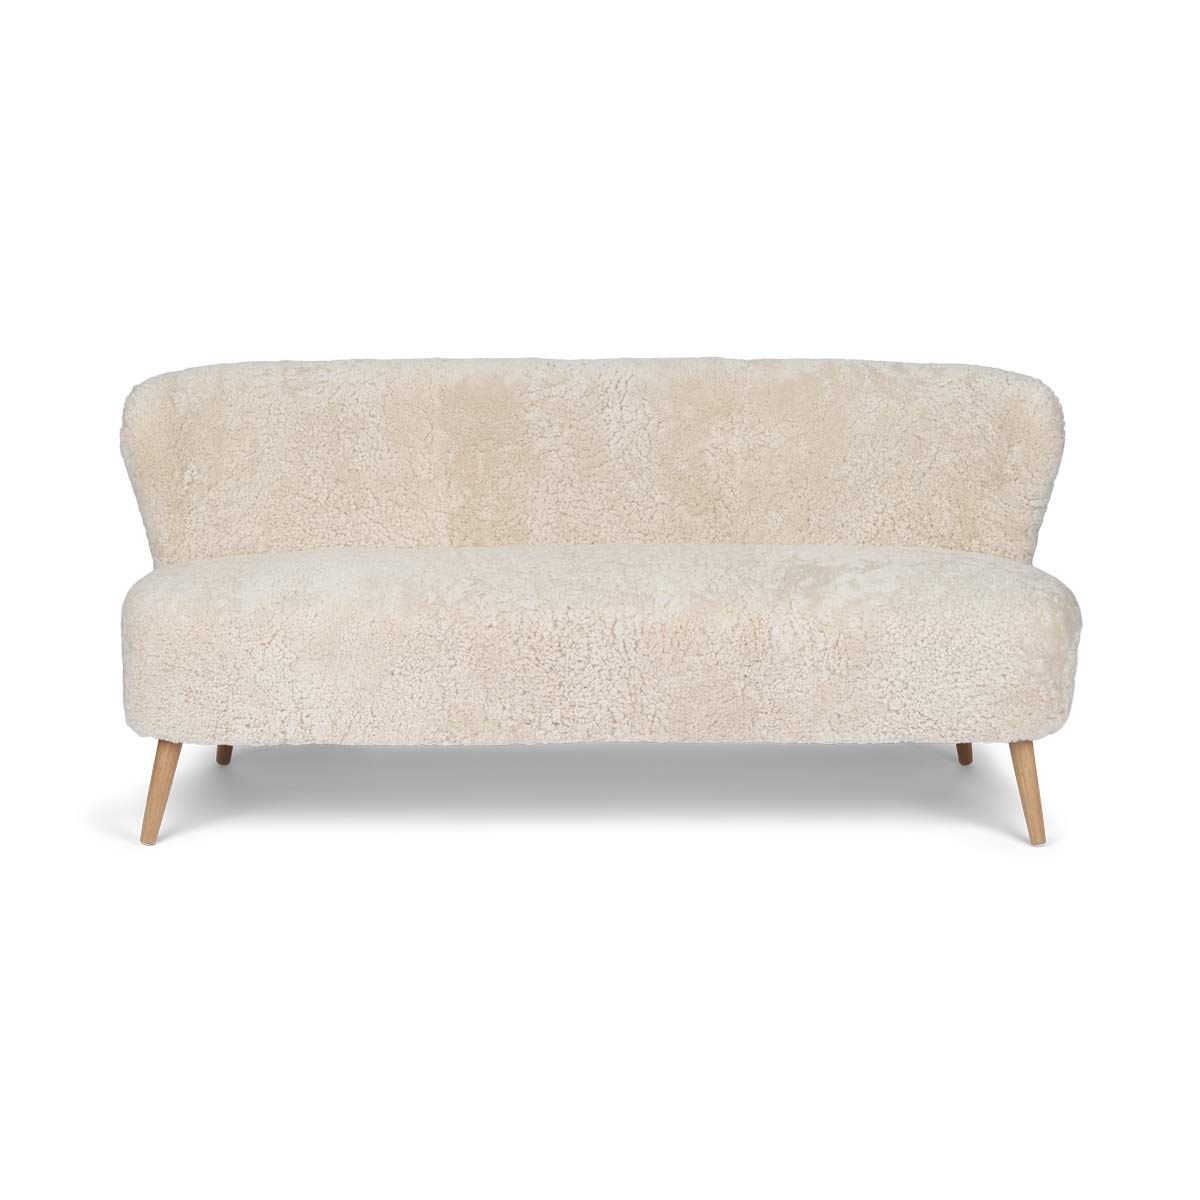 Billede af Natures Collection Emanuel Lounge 2 Seater Sofa in New Zealand Sheepskin B: 165 cm - Pearl/Oak